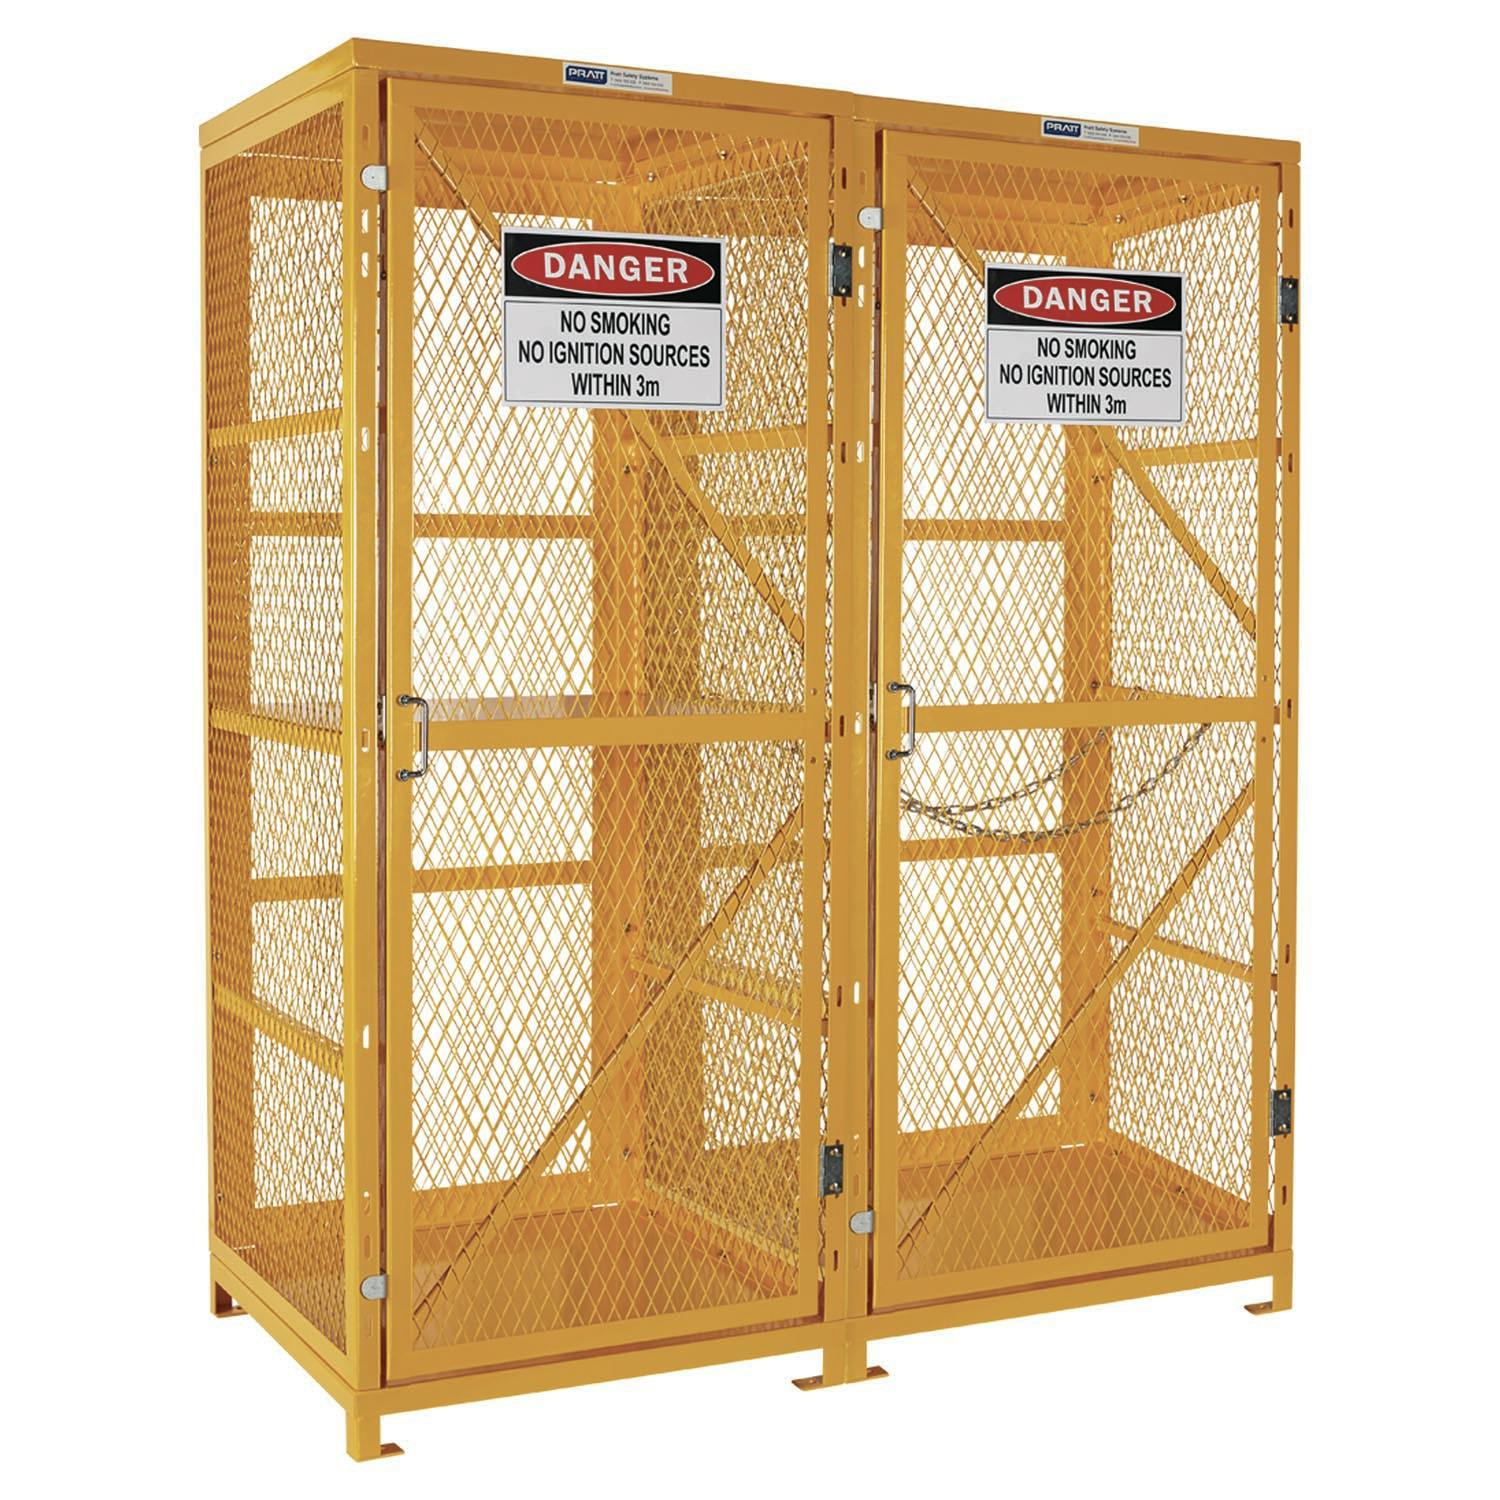 Pratt Forklift & Gas Cylinder Storage Cage. 3 Storage Levels Up To 8 Forklift & 9 G-Sized Cylinders